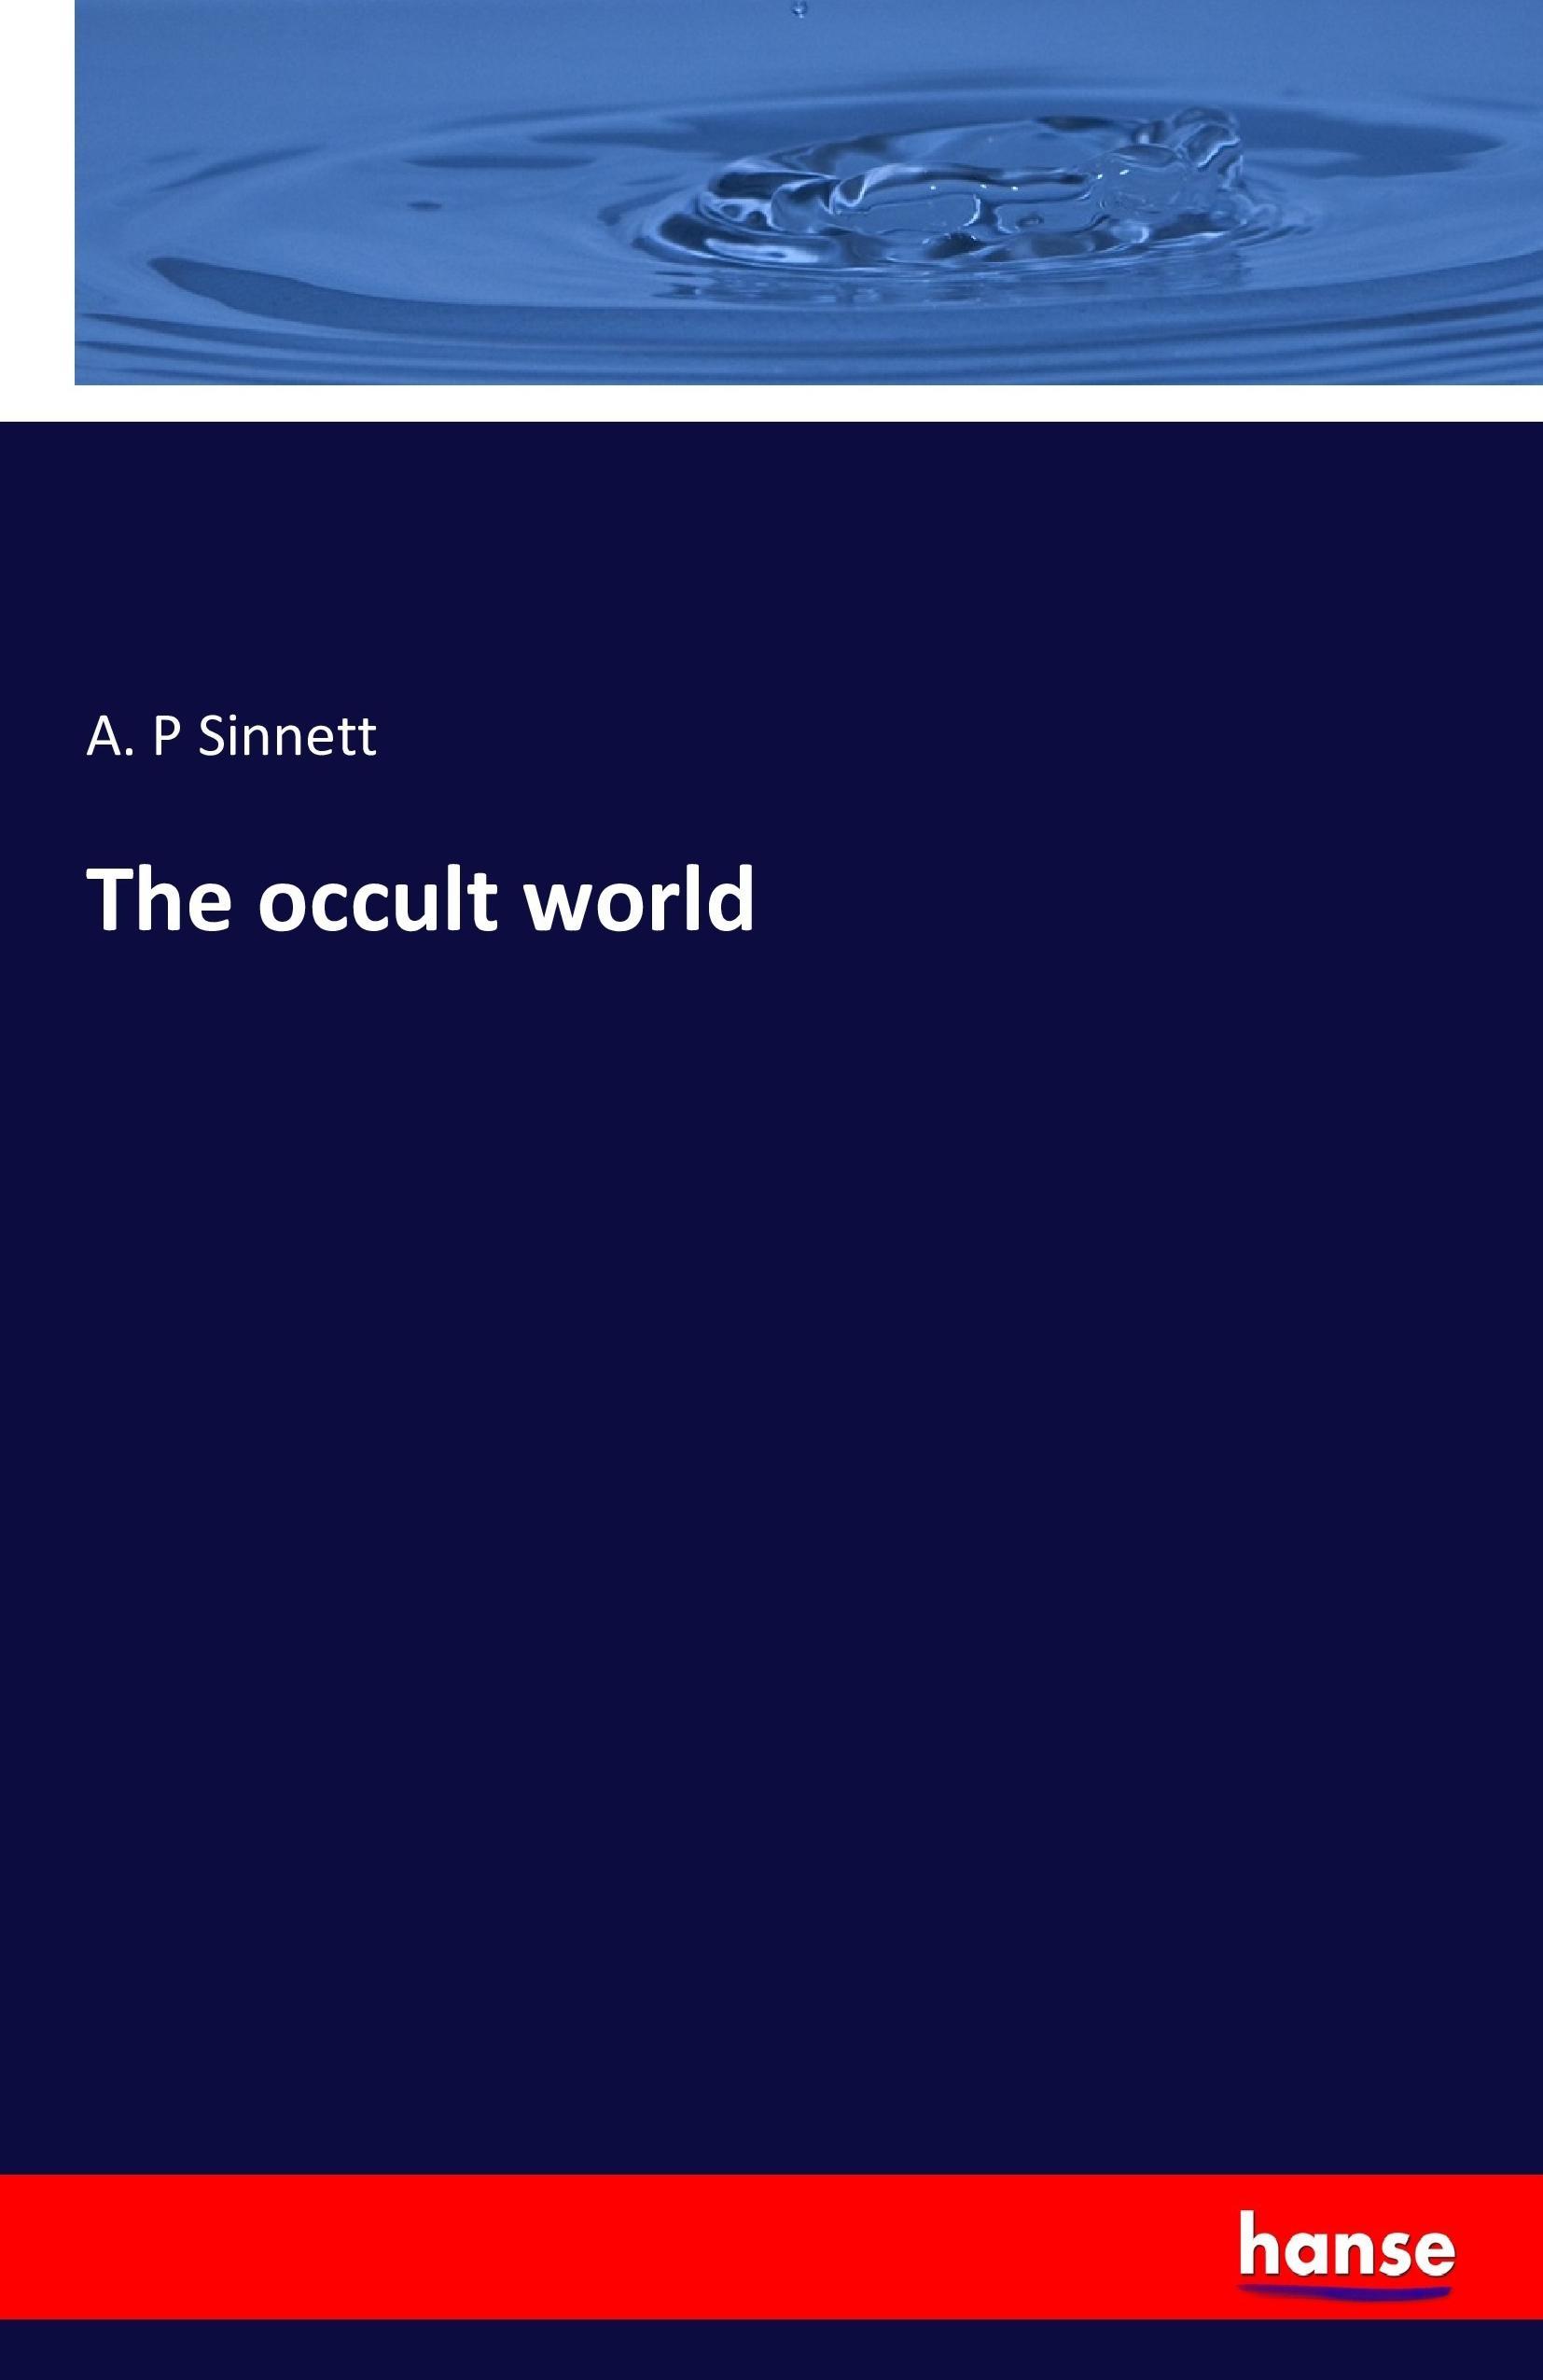 The occult world - Sinnett, A. P